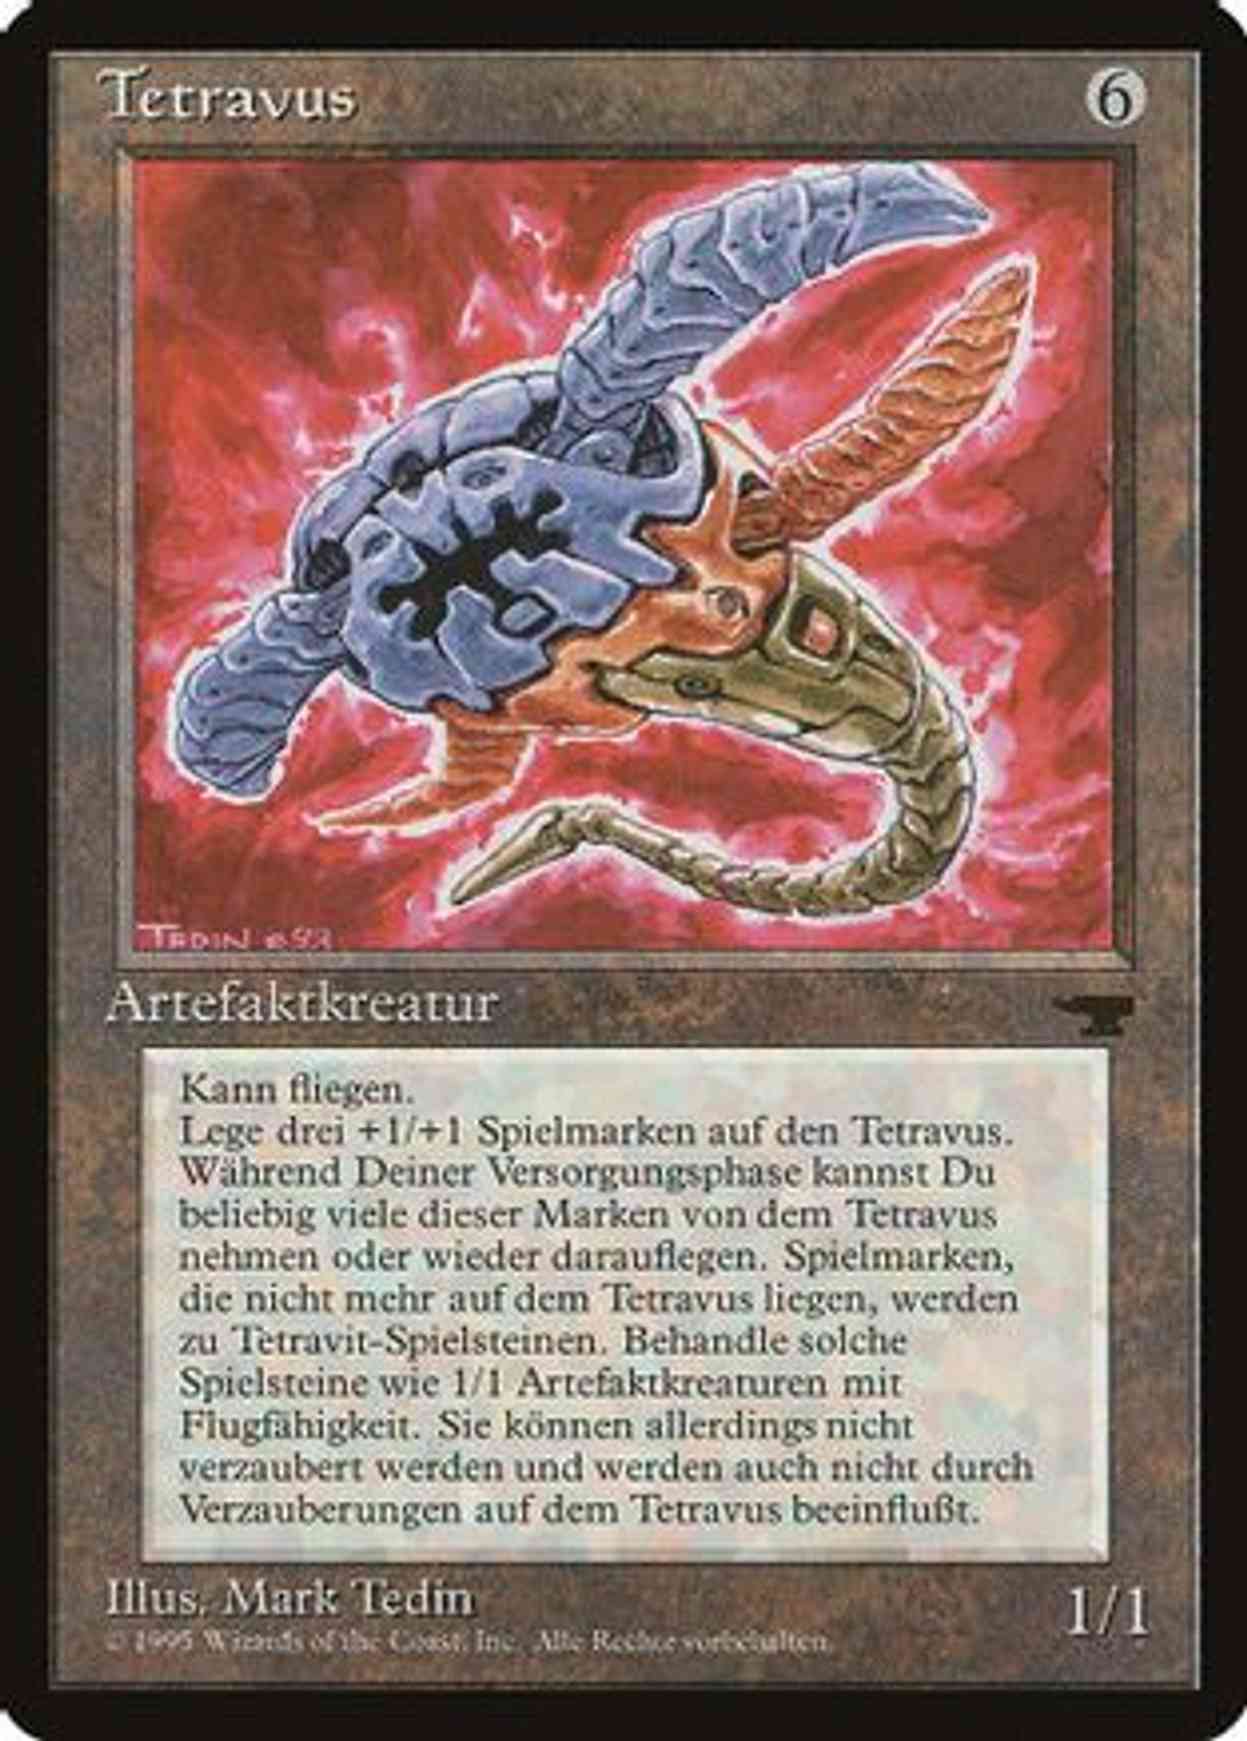 Tetravus (German) magic card front